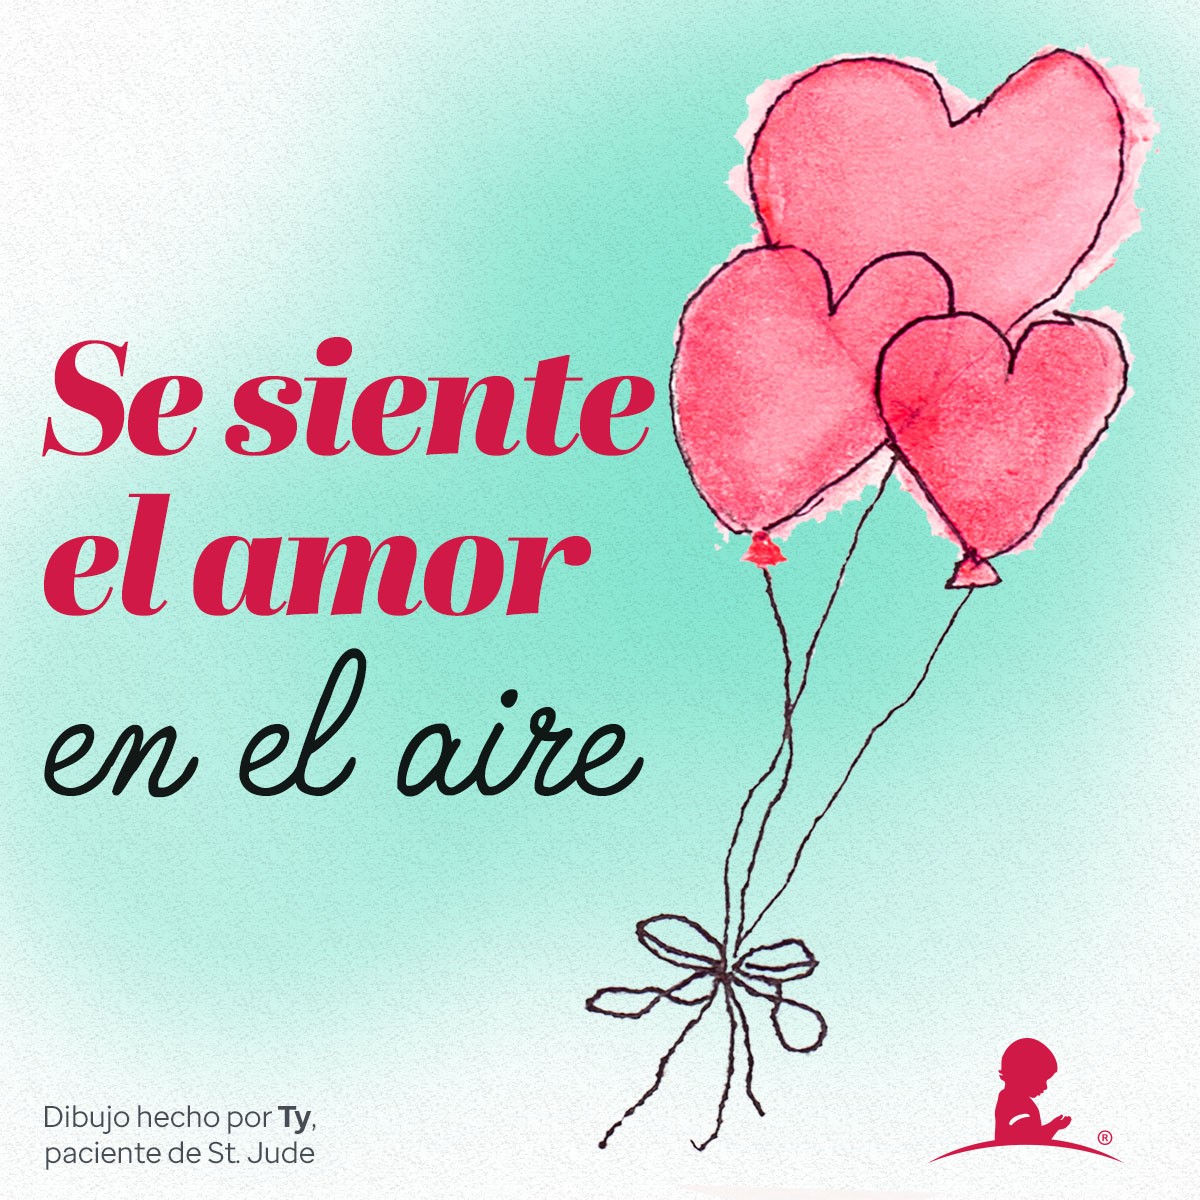 Tarjeta celebratoria del día de San Valentín con imágenes de globos en forma de corazones que lee “Se siente el amor en el aire”